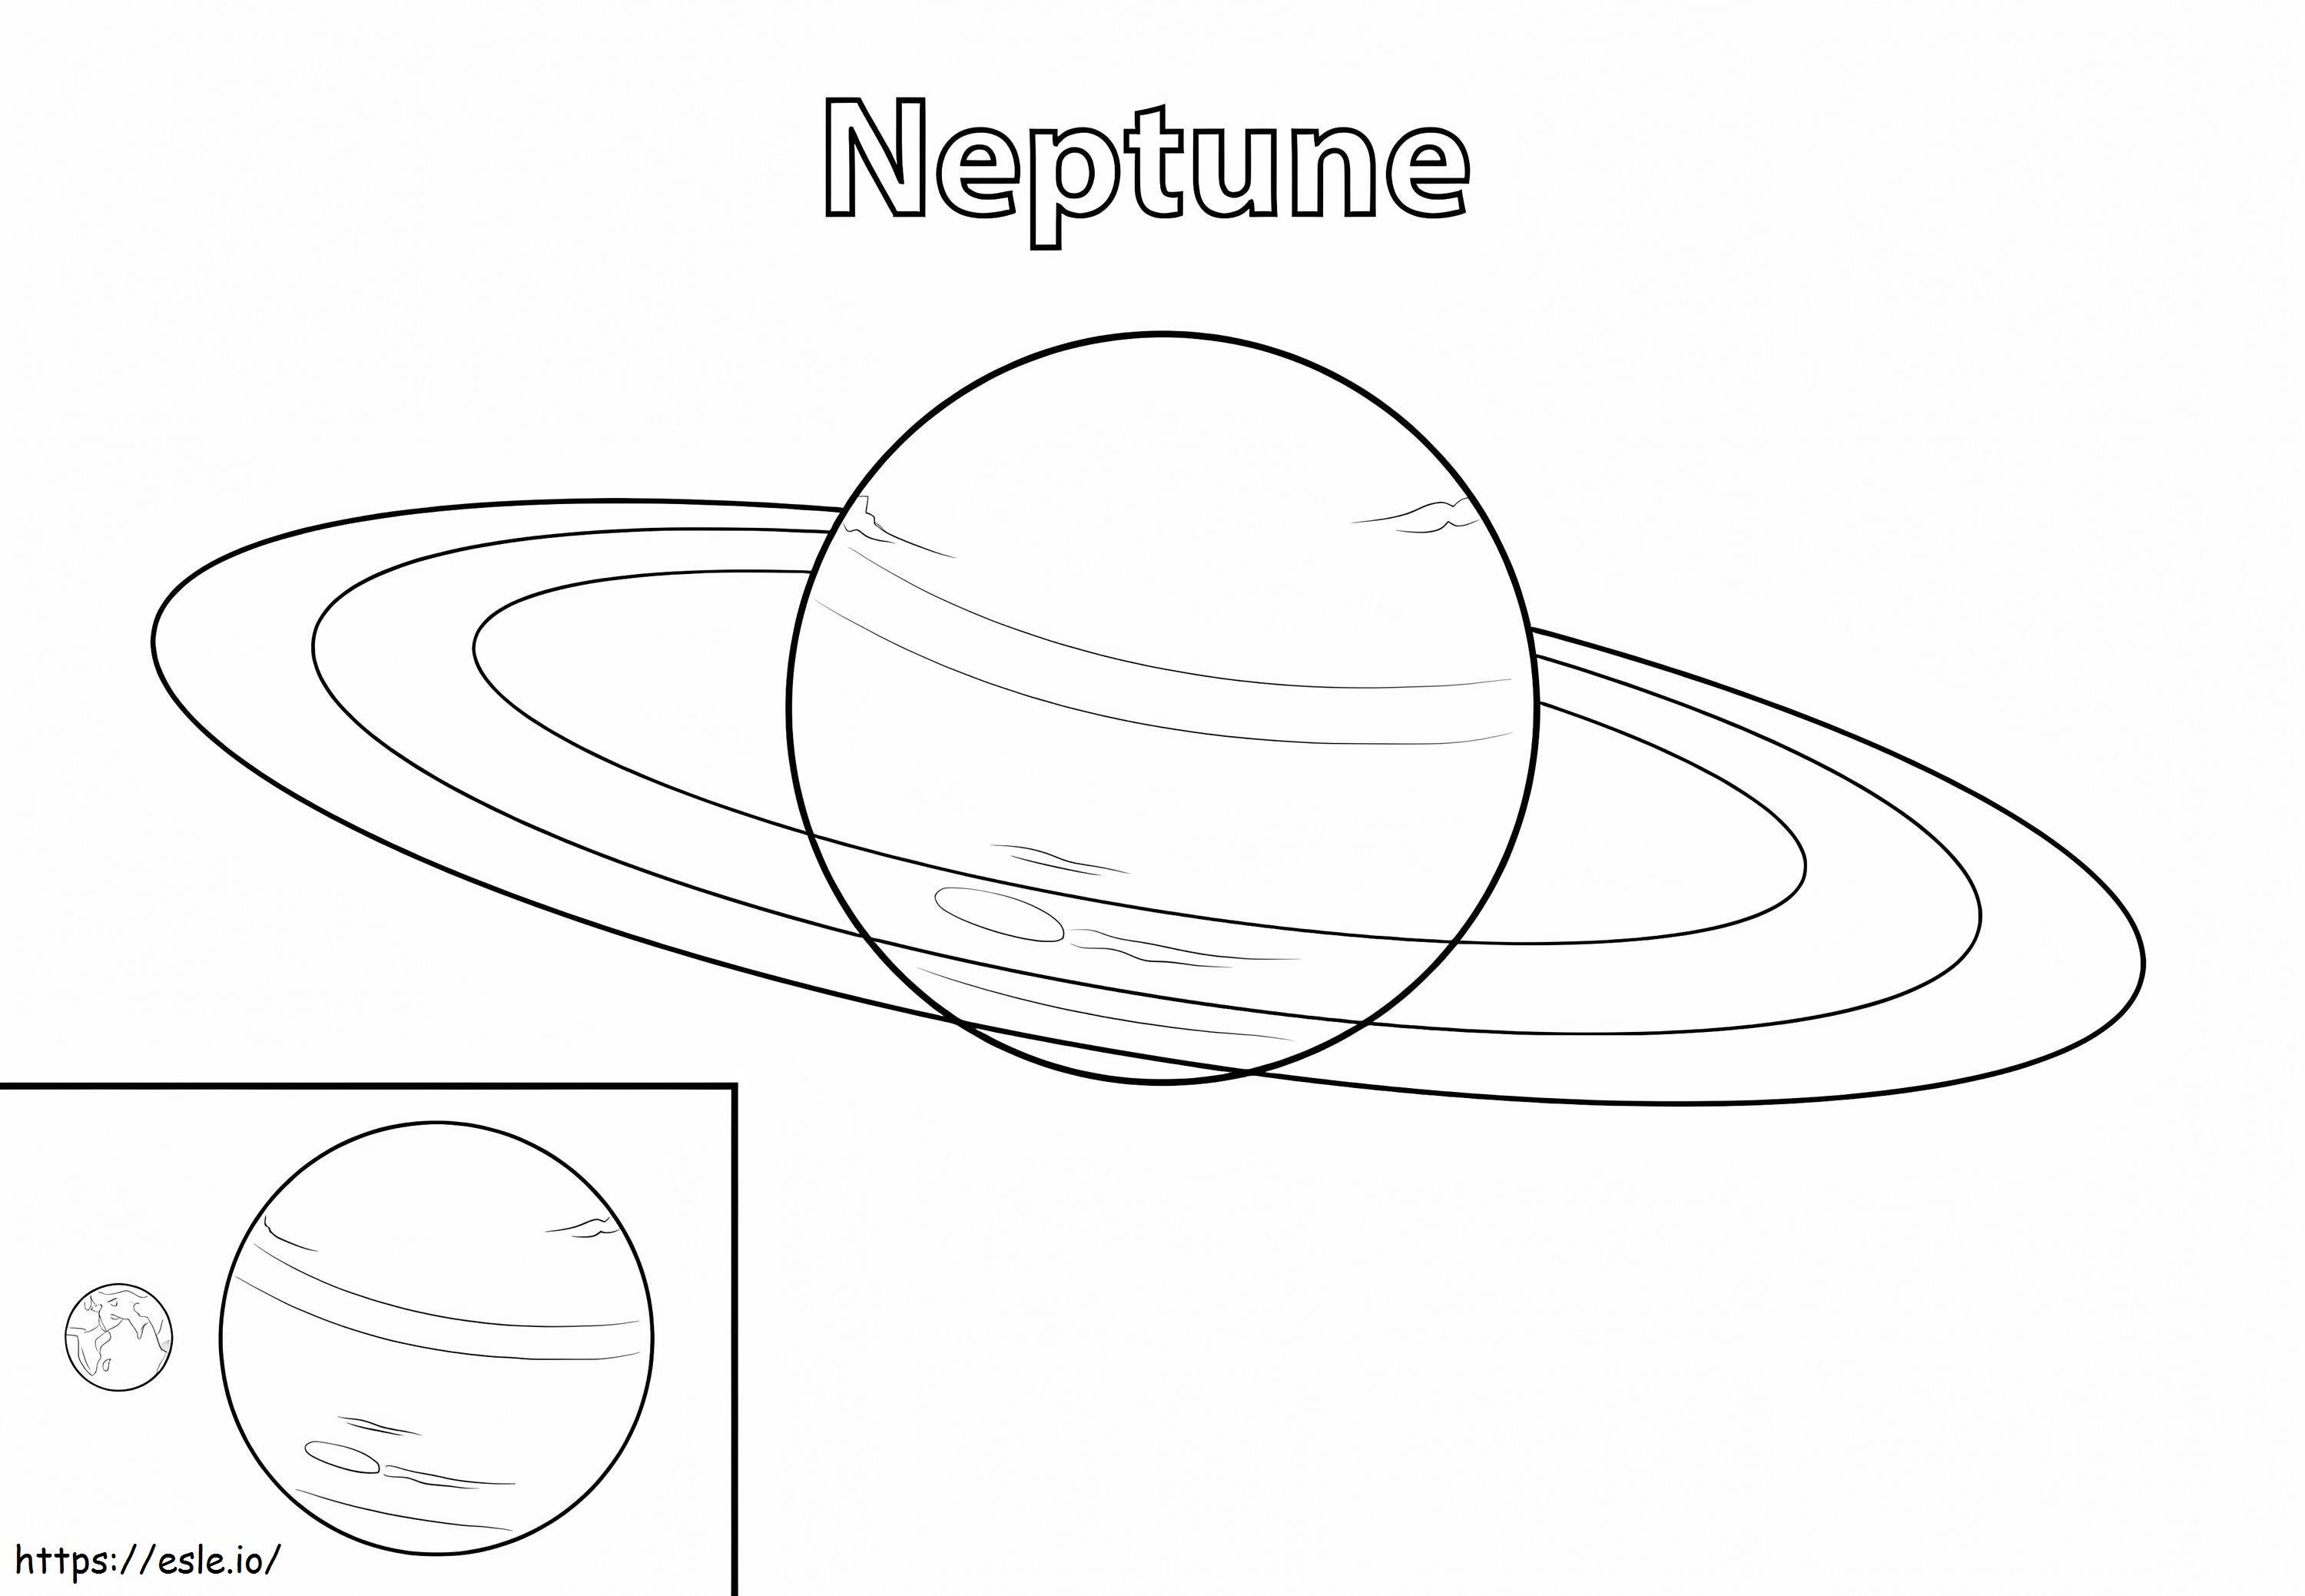 Neptun bolygó kifestő